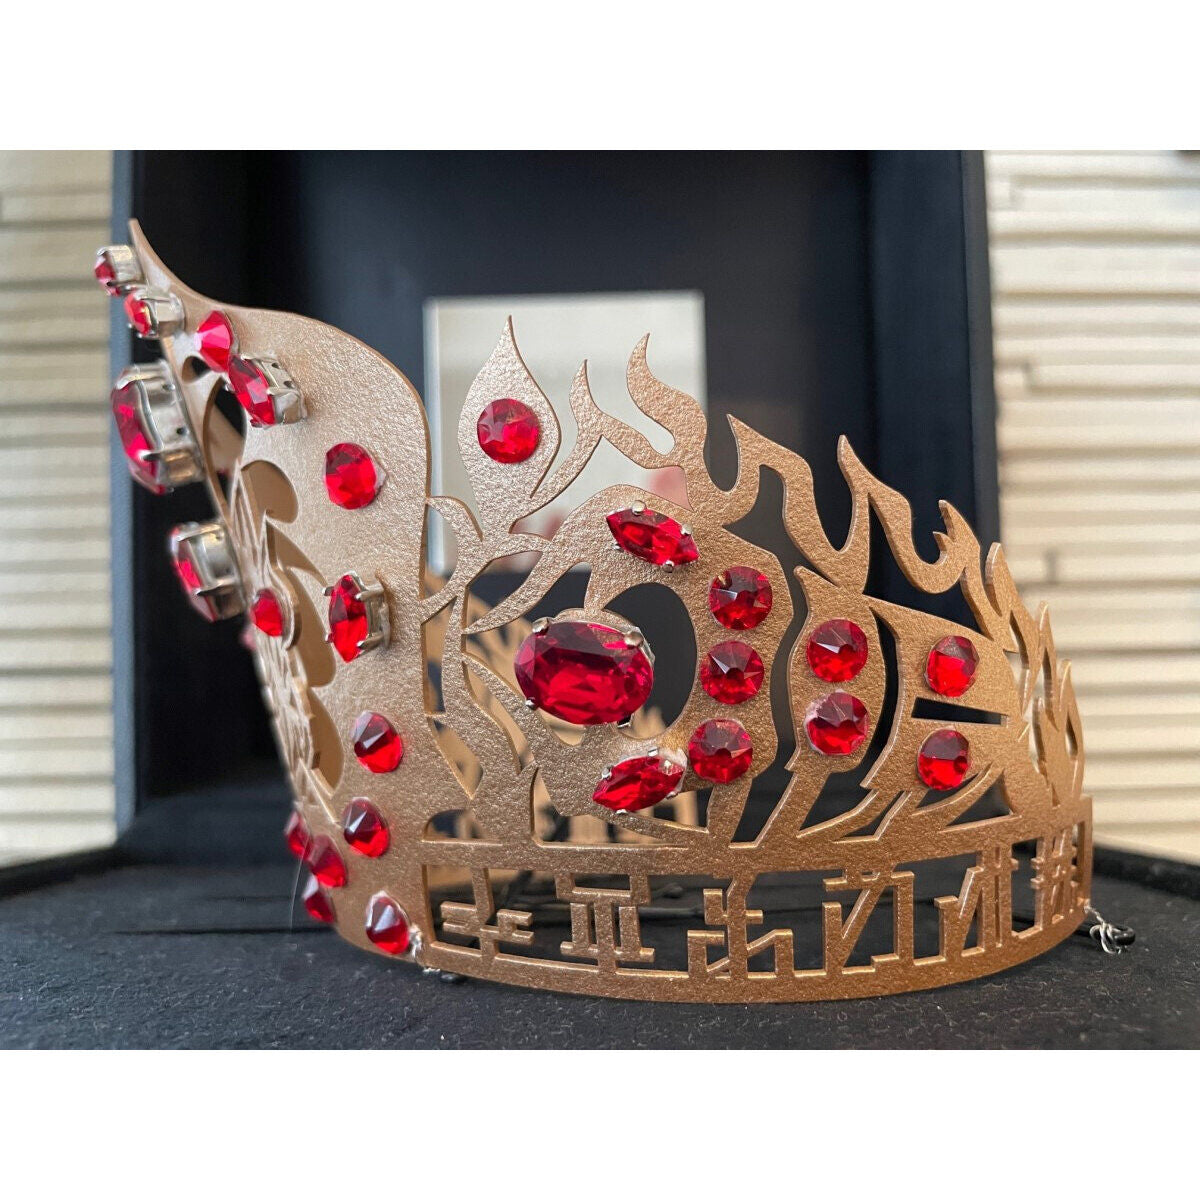 KingOhger Racules' Crown